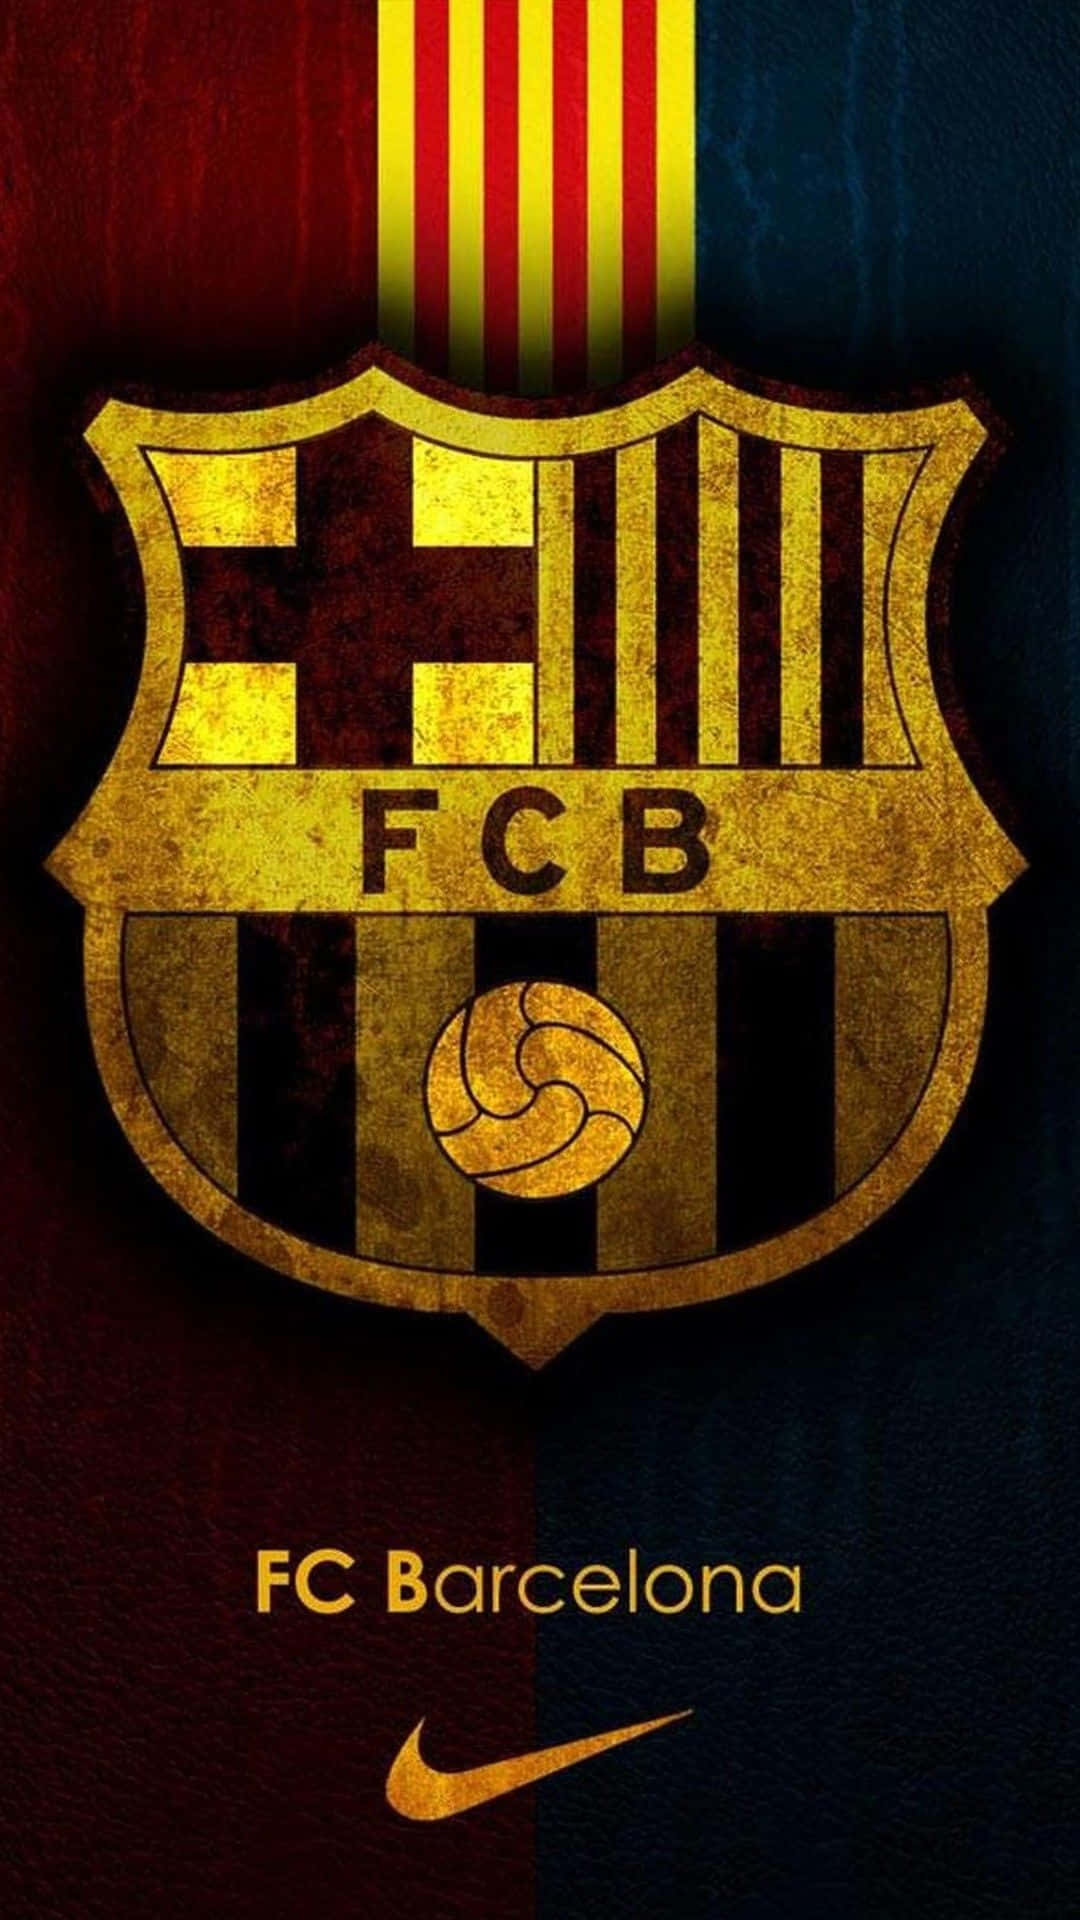 Fondode Pantalla De Fútbol Del Fc Barcelona Y Del Logo De Nike. Fondo de pantalla